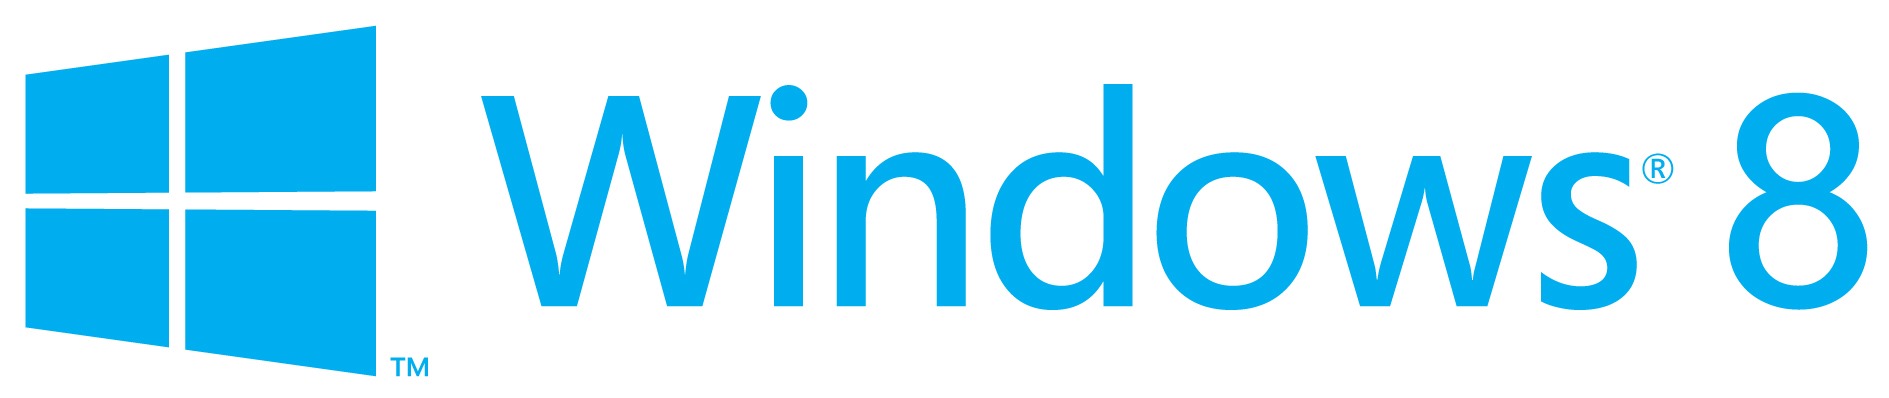 Redesigning the Windows Logo